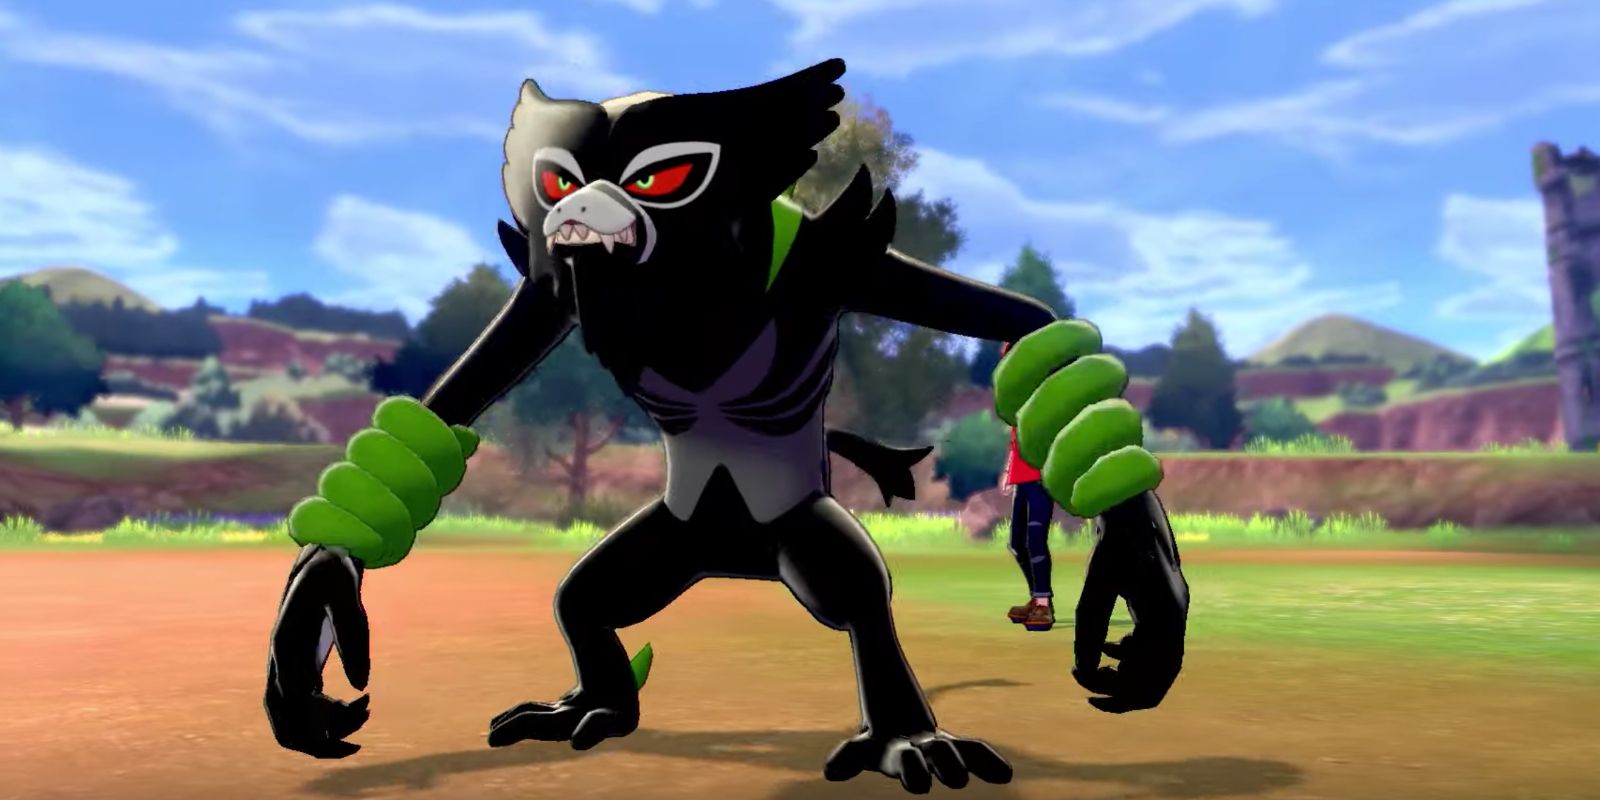 New Mythical Pokémon Revealed: Zarude!